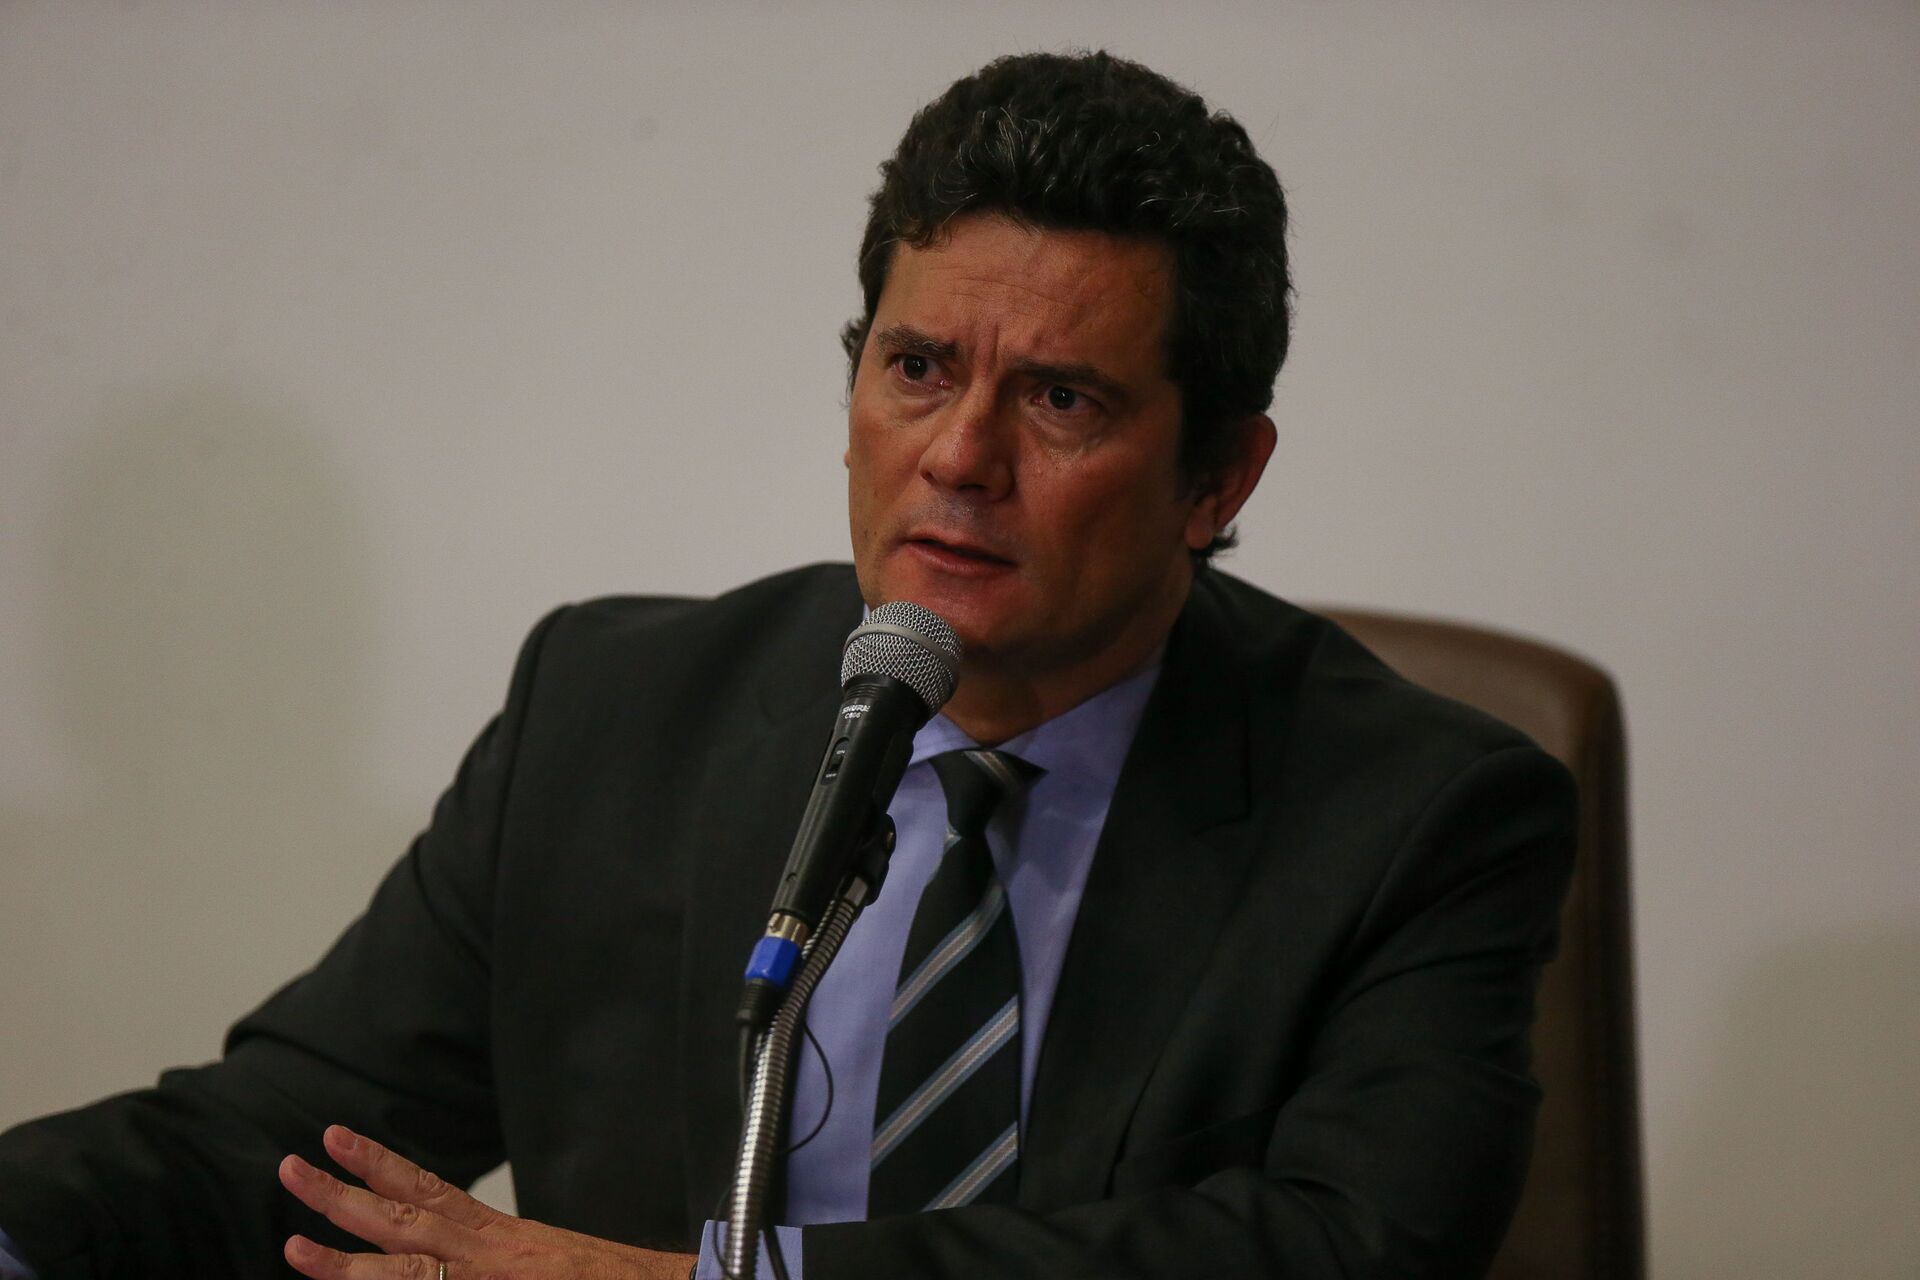  O ministro da Justiça, Sergio Moro, é aplaudido por servidores e assessores após pronunciamento no qual anunciou sua demissão do cargo, após um embate com o presidente Jair Bolsonaro - Sputnik Brasil, 1920, 26.01.2022